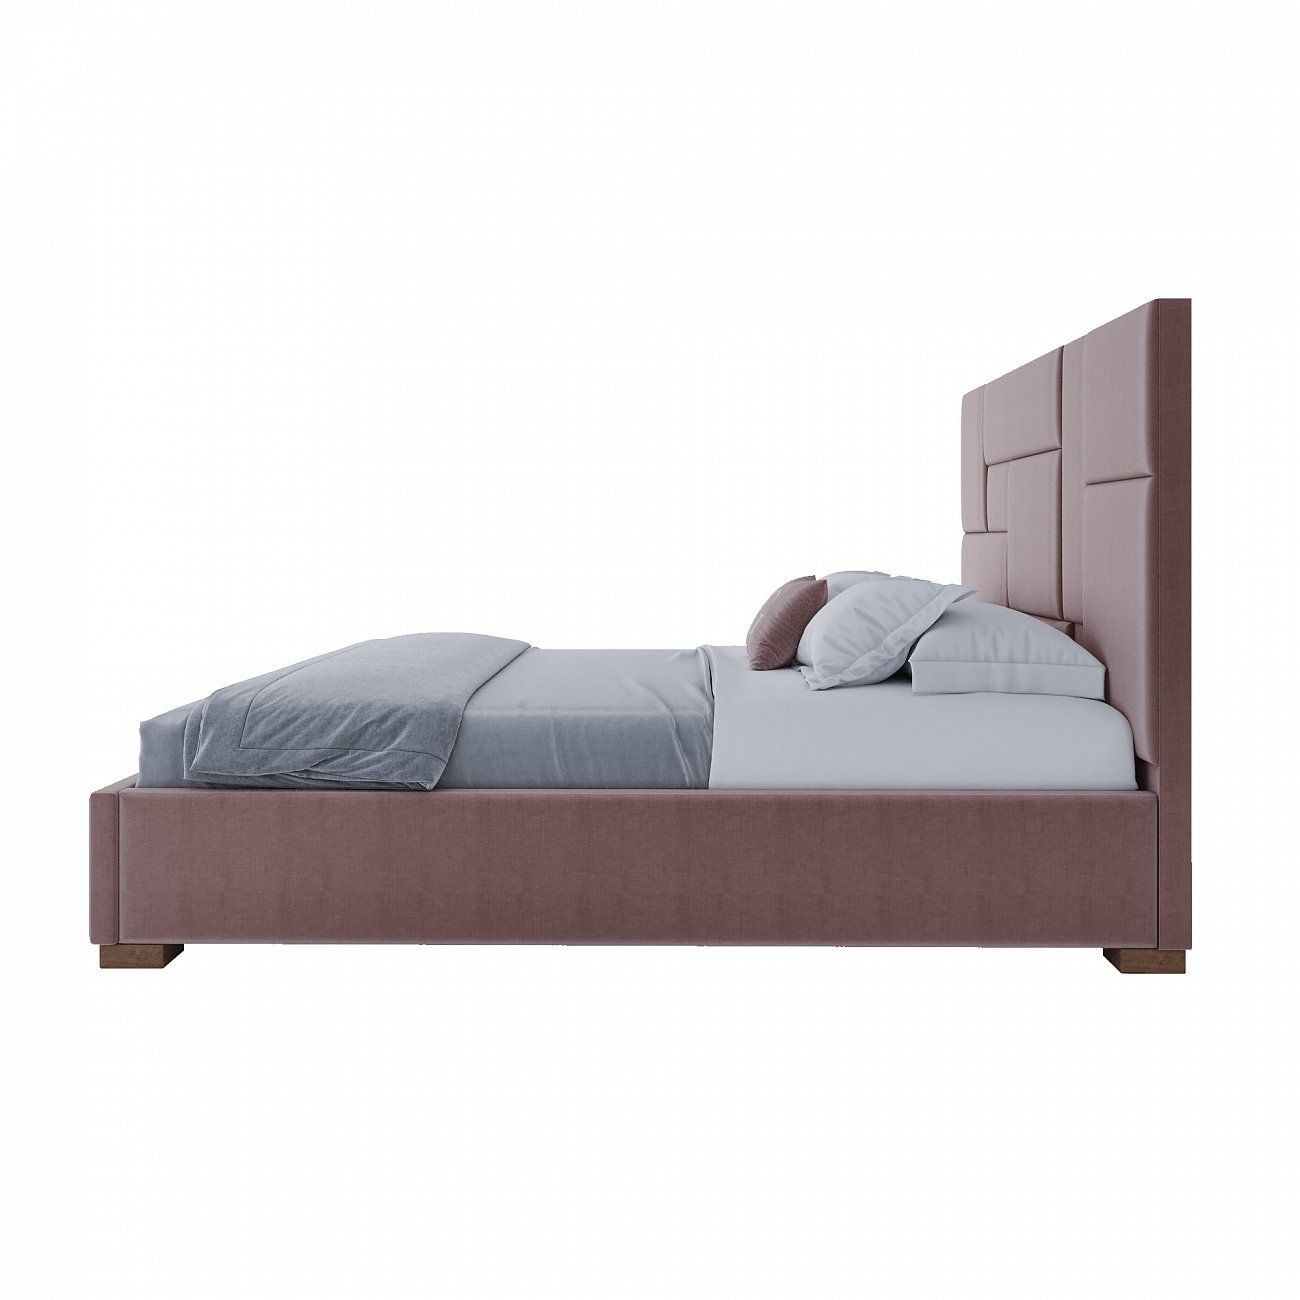 Кровать двуспальная с мягким изголовьем 180х200 см розовая Wax